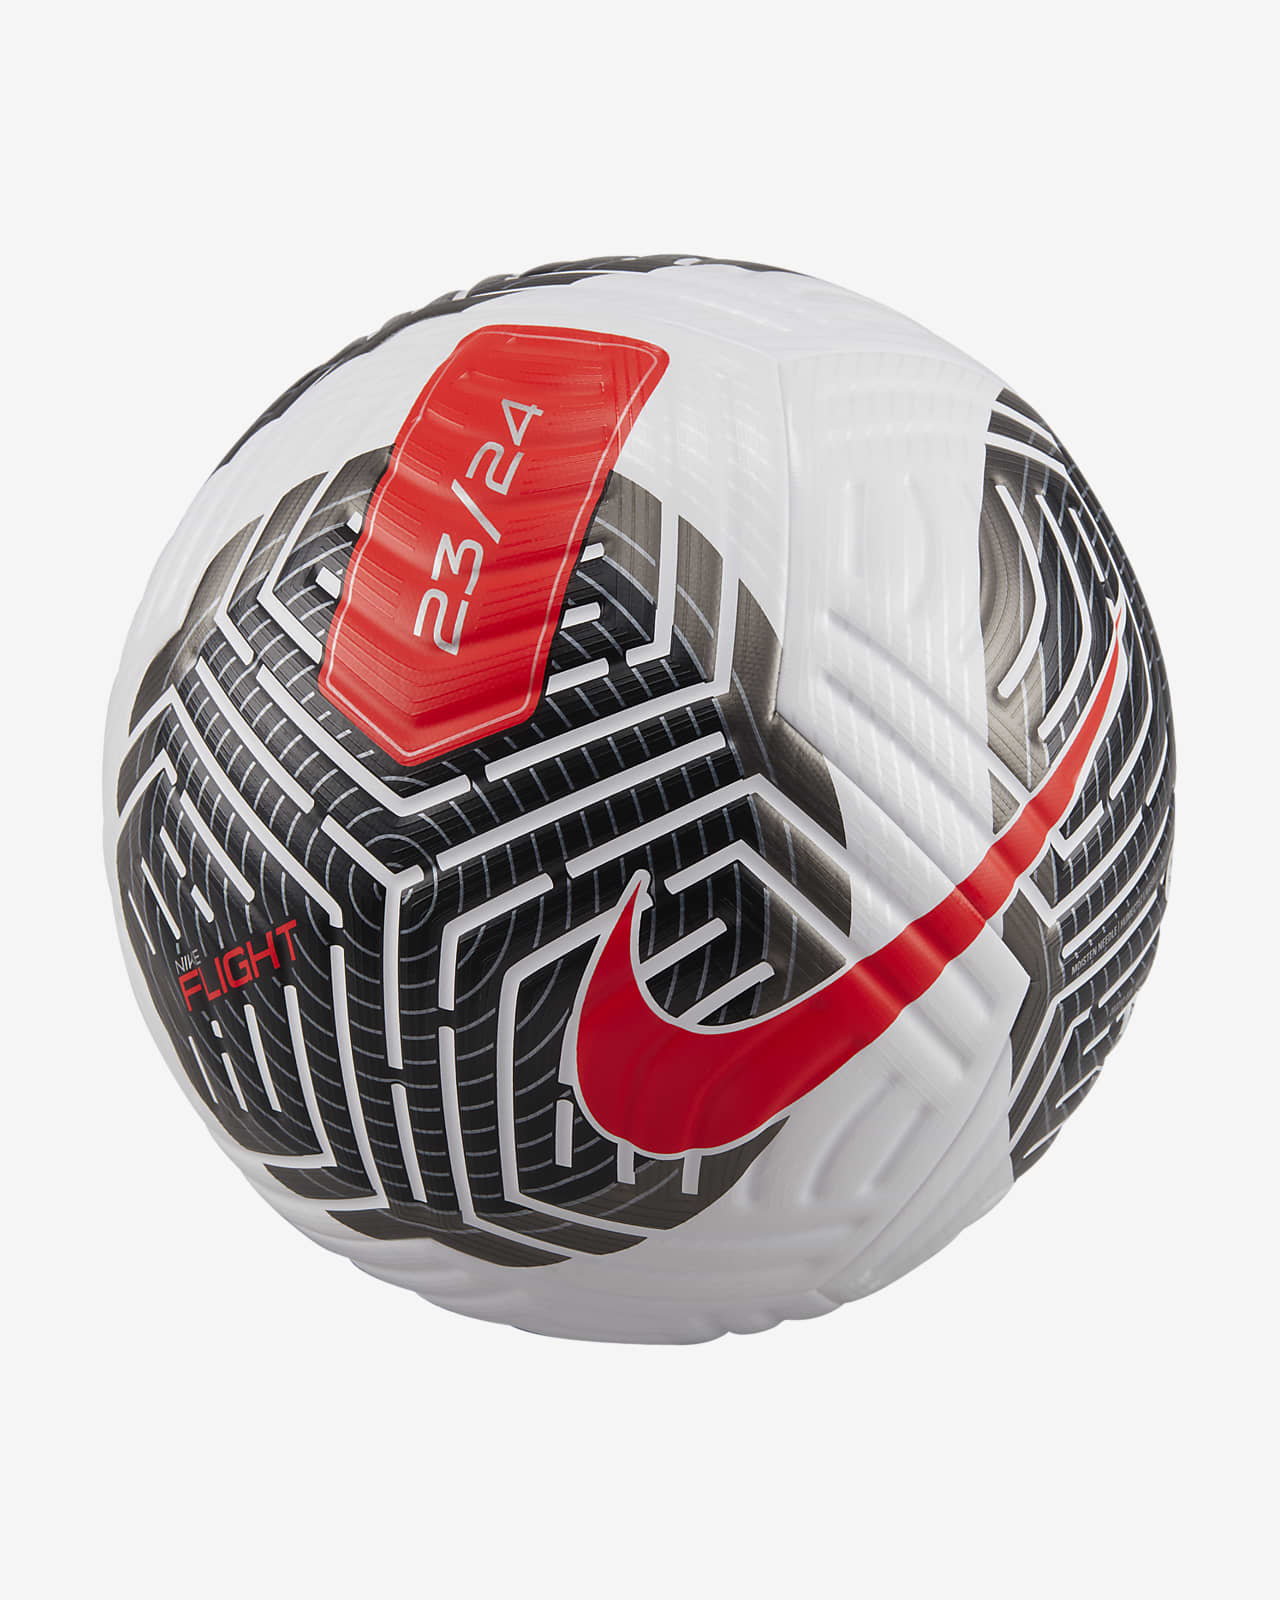 Nike Flight futball-labda